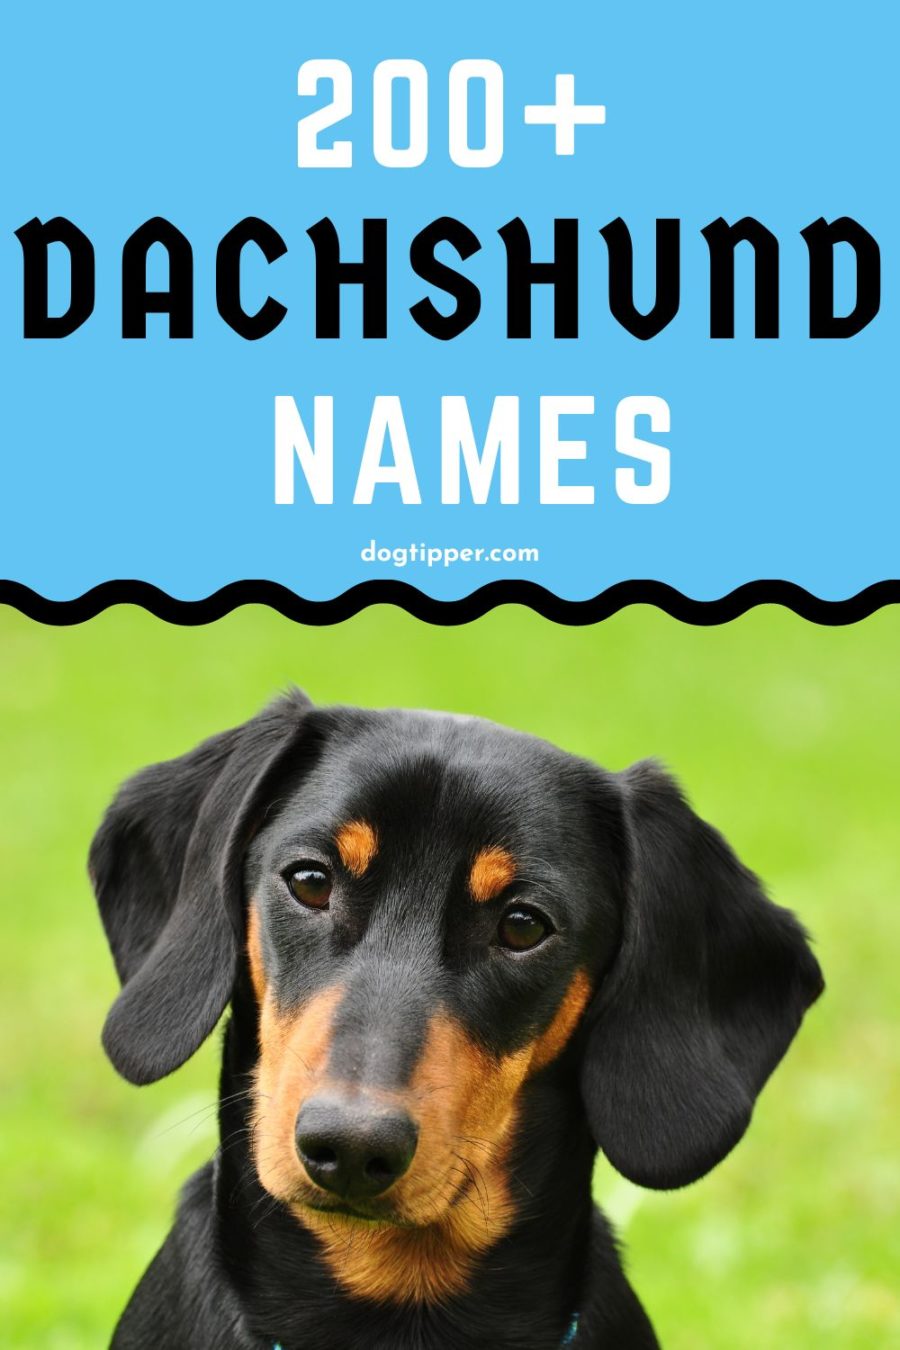 ¡Más de 200 nombres de Dachshund para tu nuevo perro salchicha!